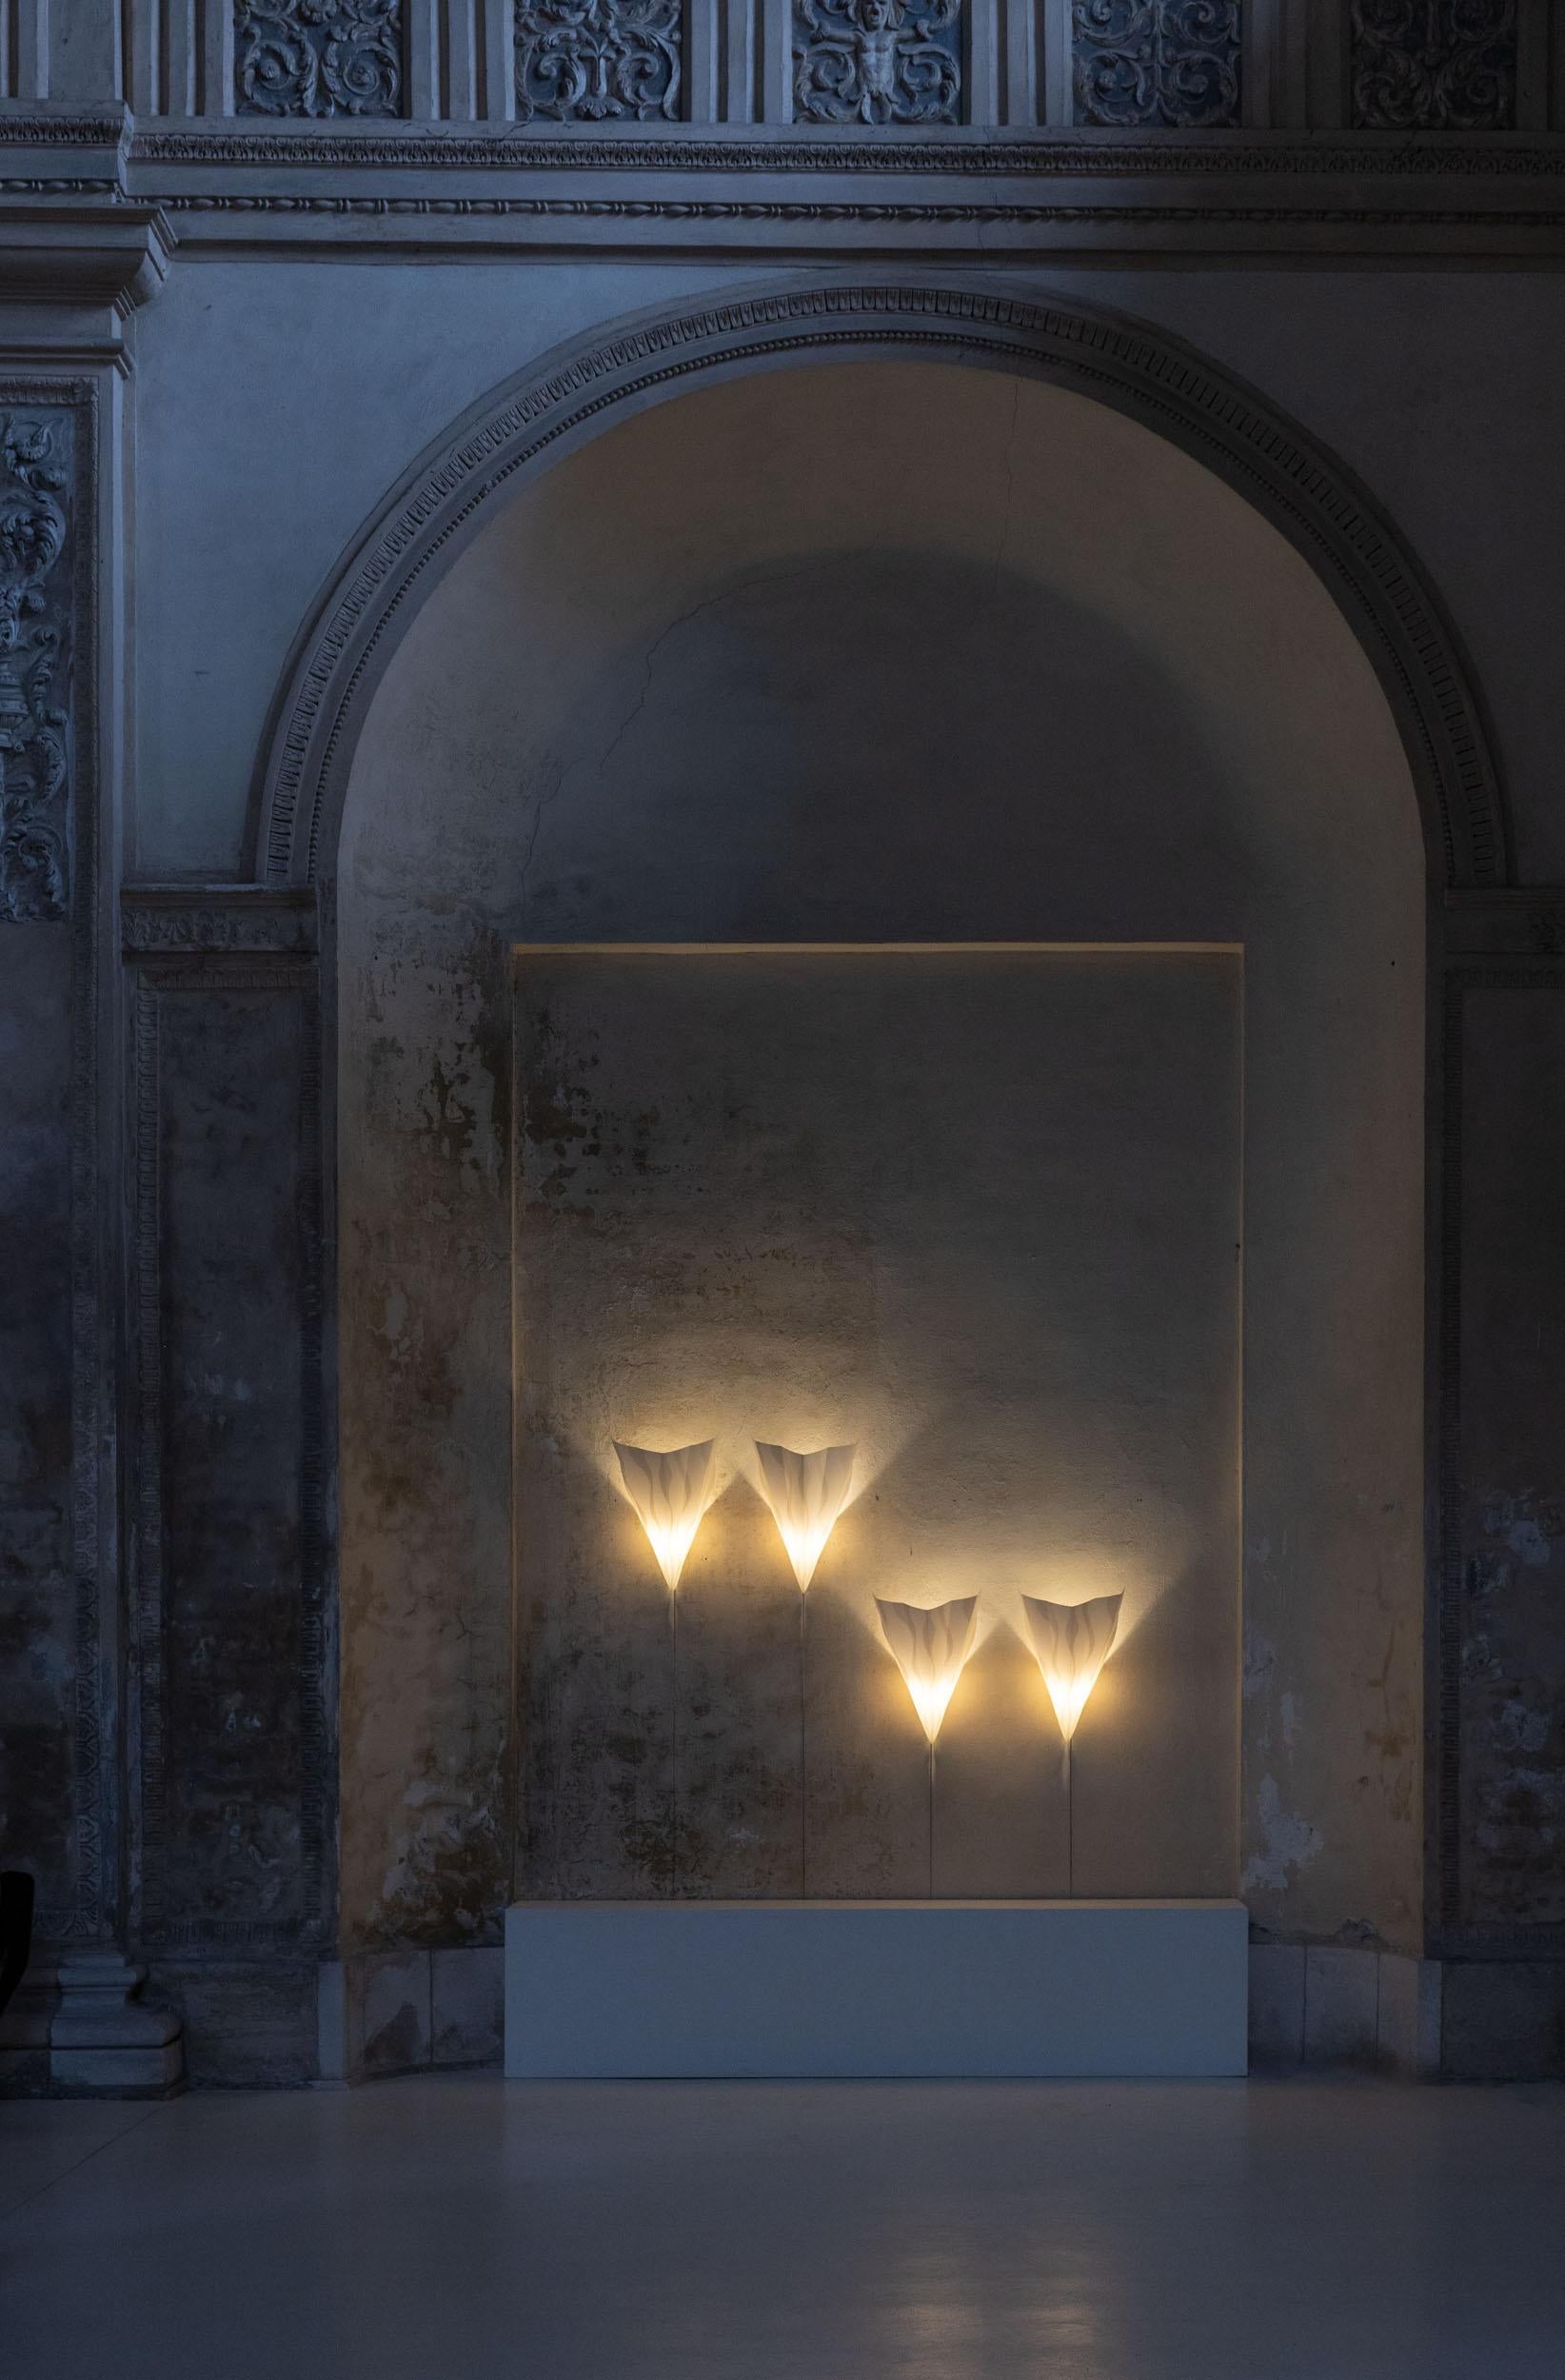 Vier Sister-Lampen aus der Mitte des Jahrhunderts, entworfen von Riccardo Dalisi für Oluce im Jahr 1990. 
Die Textur des Lampenschirms erinnert an Pergamentpapier 
Äußerst interessante Stücke italienischen Designs in perfektem Zustand.
Gemeldet für